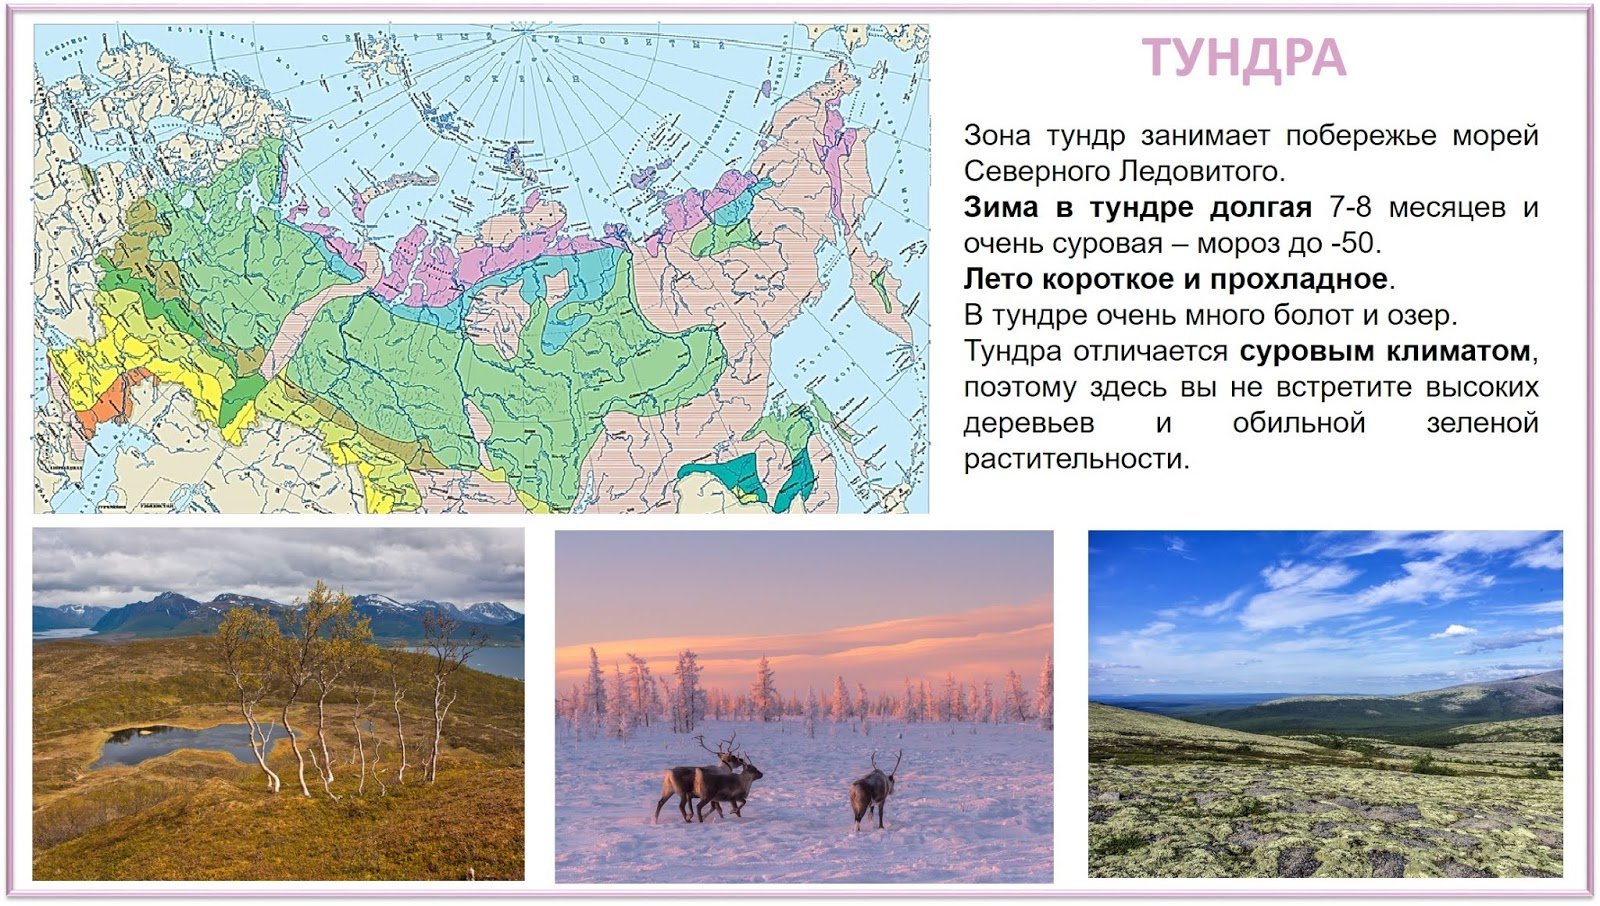 Понятие тундра. Тундра природная зона расположение в России. Тундра на карте природных зон. Географическое положение зоны тундры в России. Зона тундры на карте природных зон.